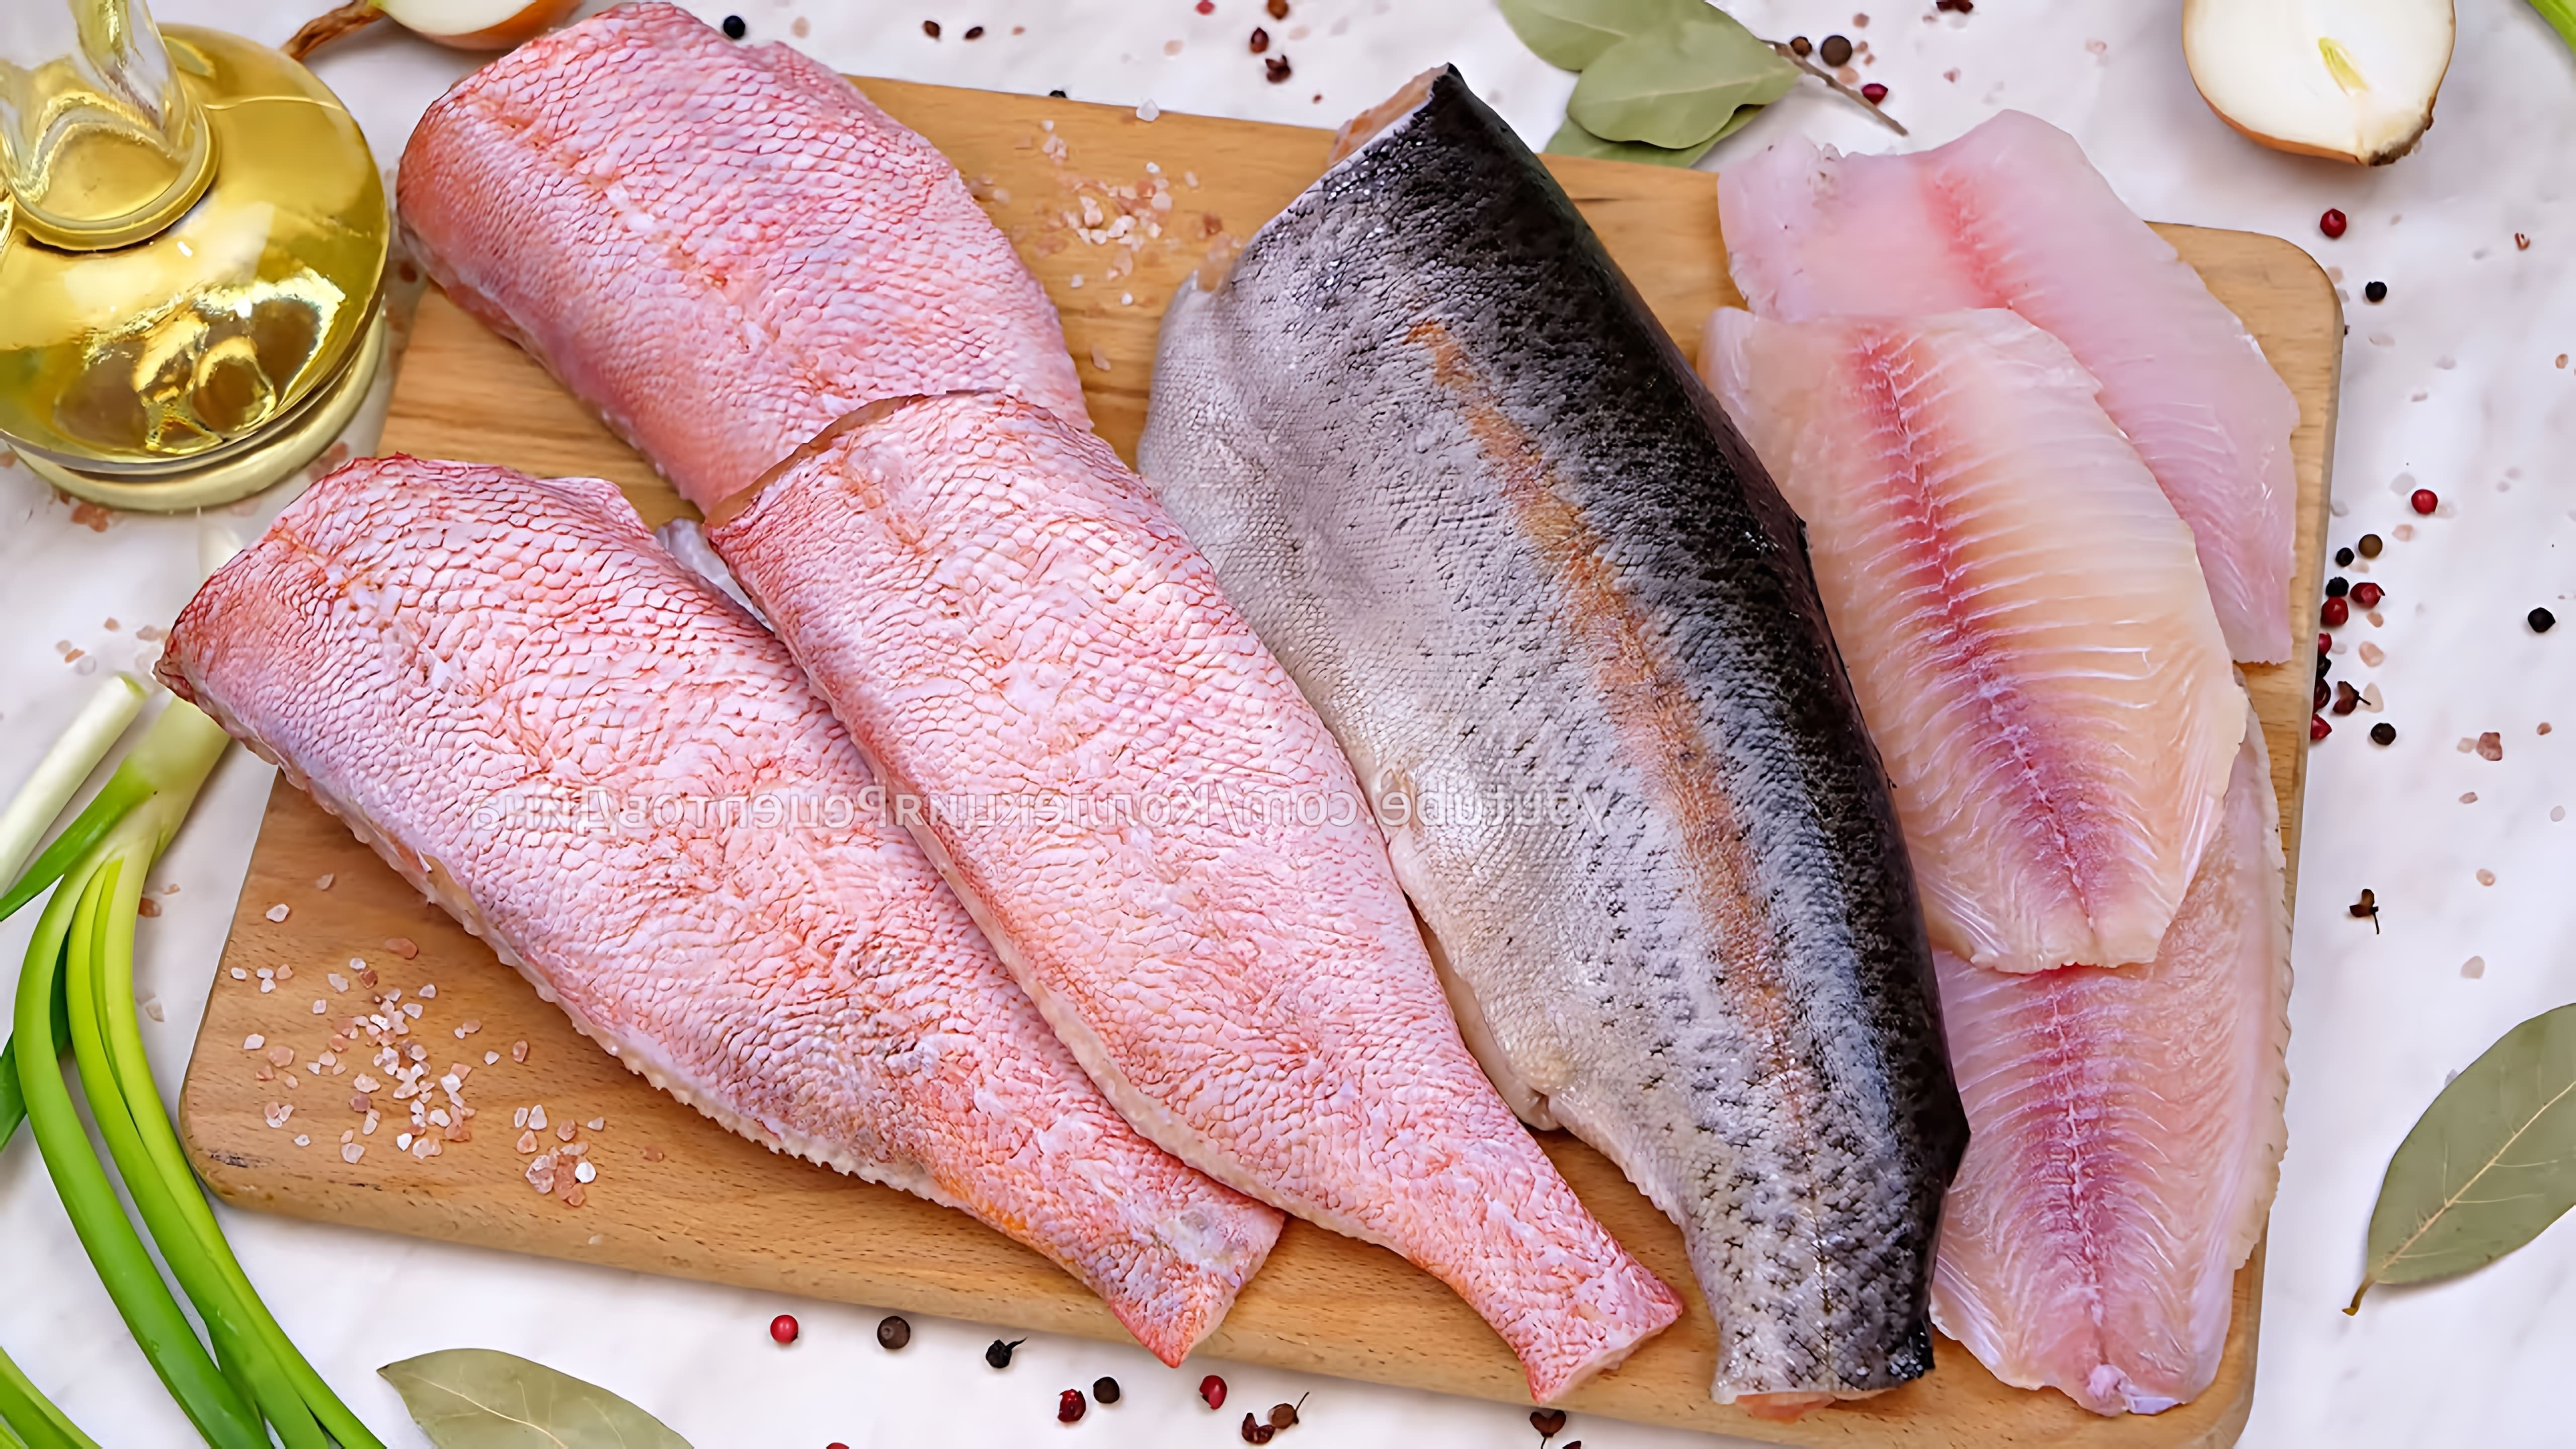 В этом видео Дина предлагает три рецепта рыбных блюд: рыба в хрустящем кляре, ароматное жаркое с рыбой в горшочках и рыба, запеченная с овощами